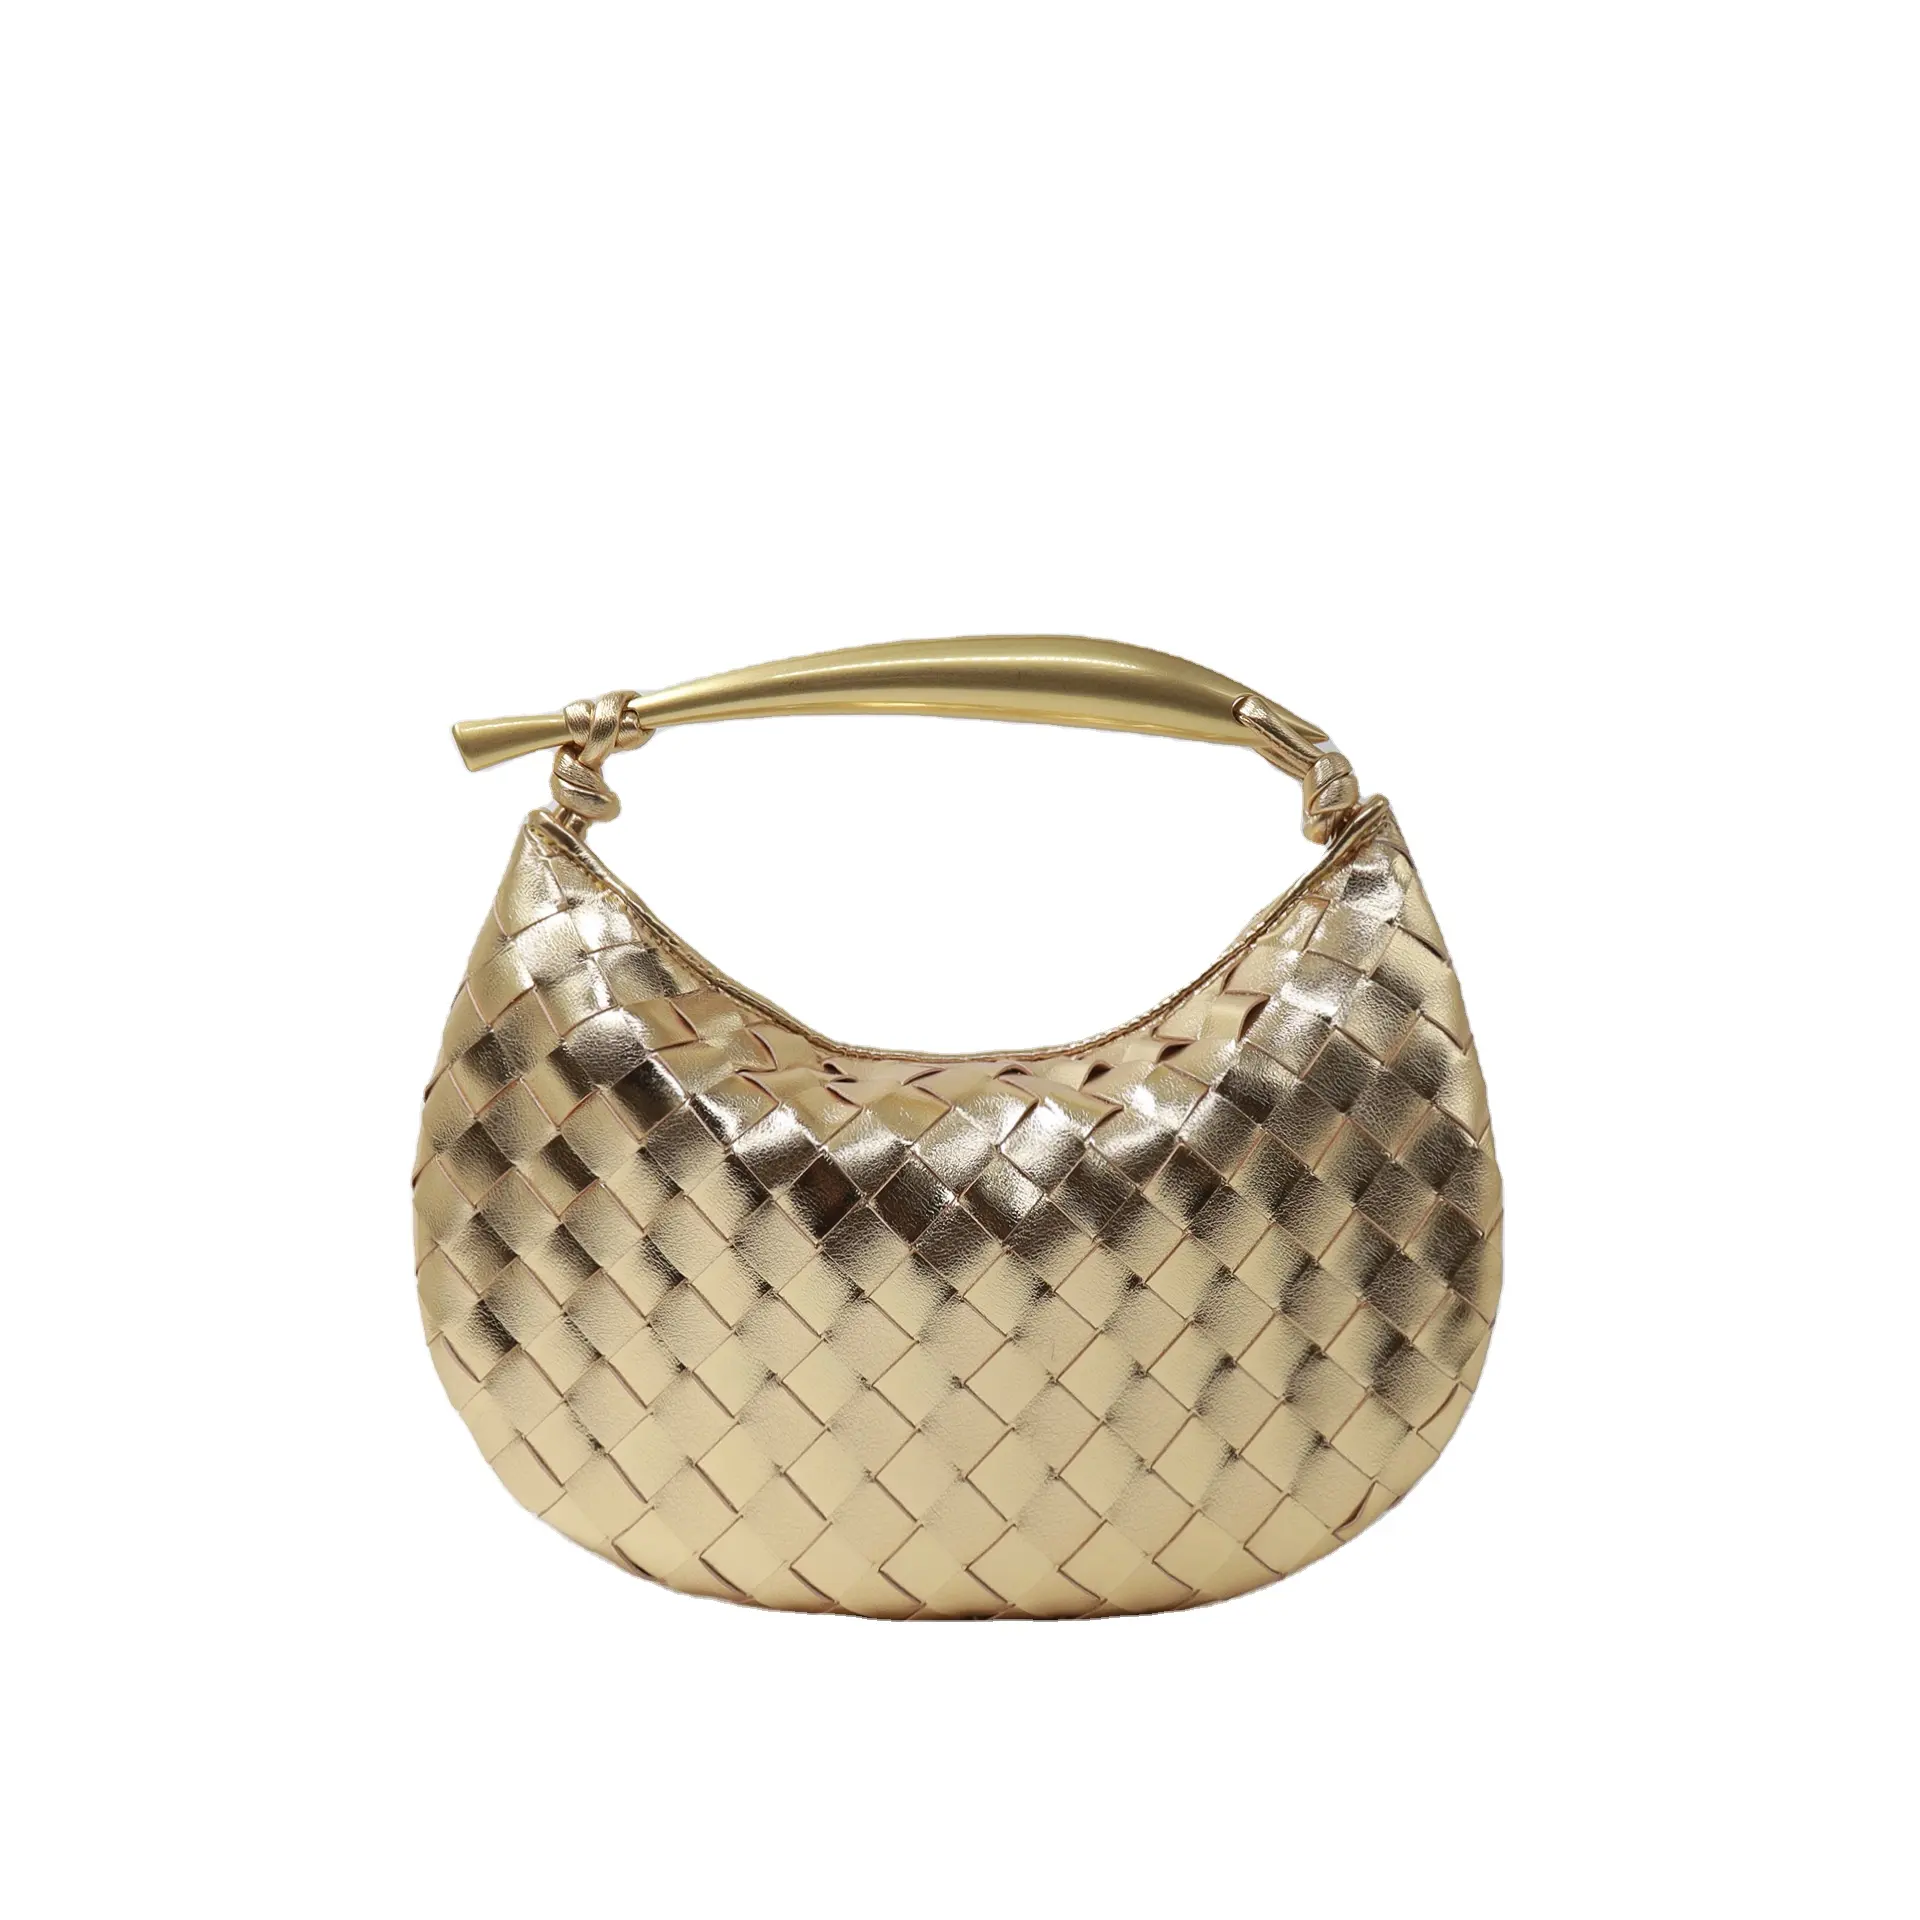 Rewin Light Weight Top Handle Soft Handmade Woven Pu Leather Clutch Handbag Gold Sardine bag For Woman